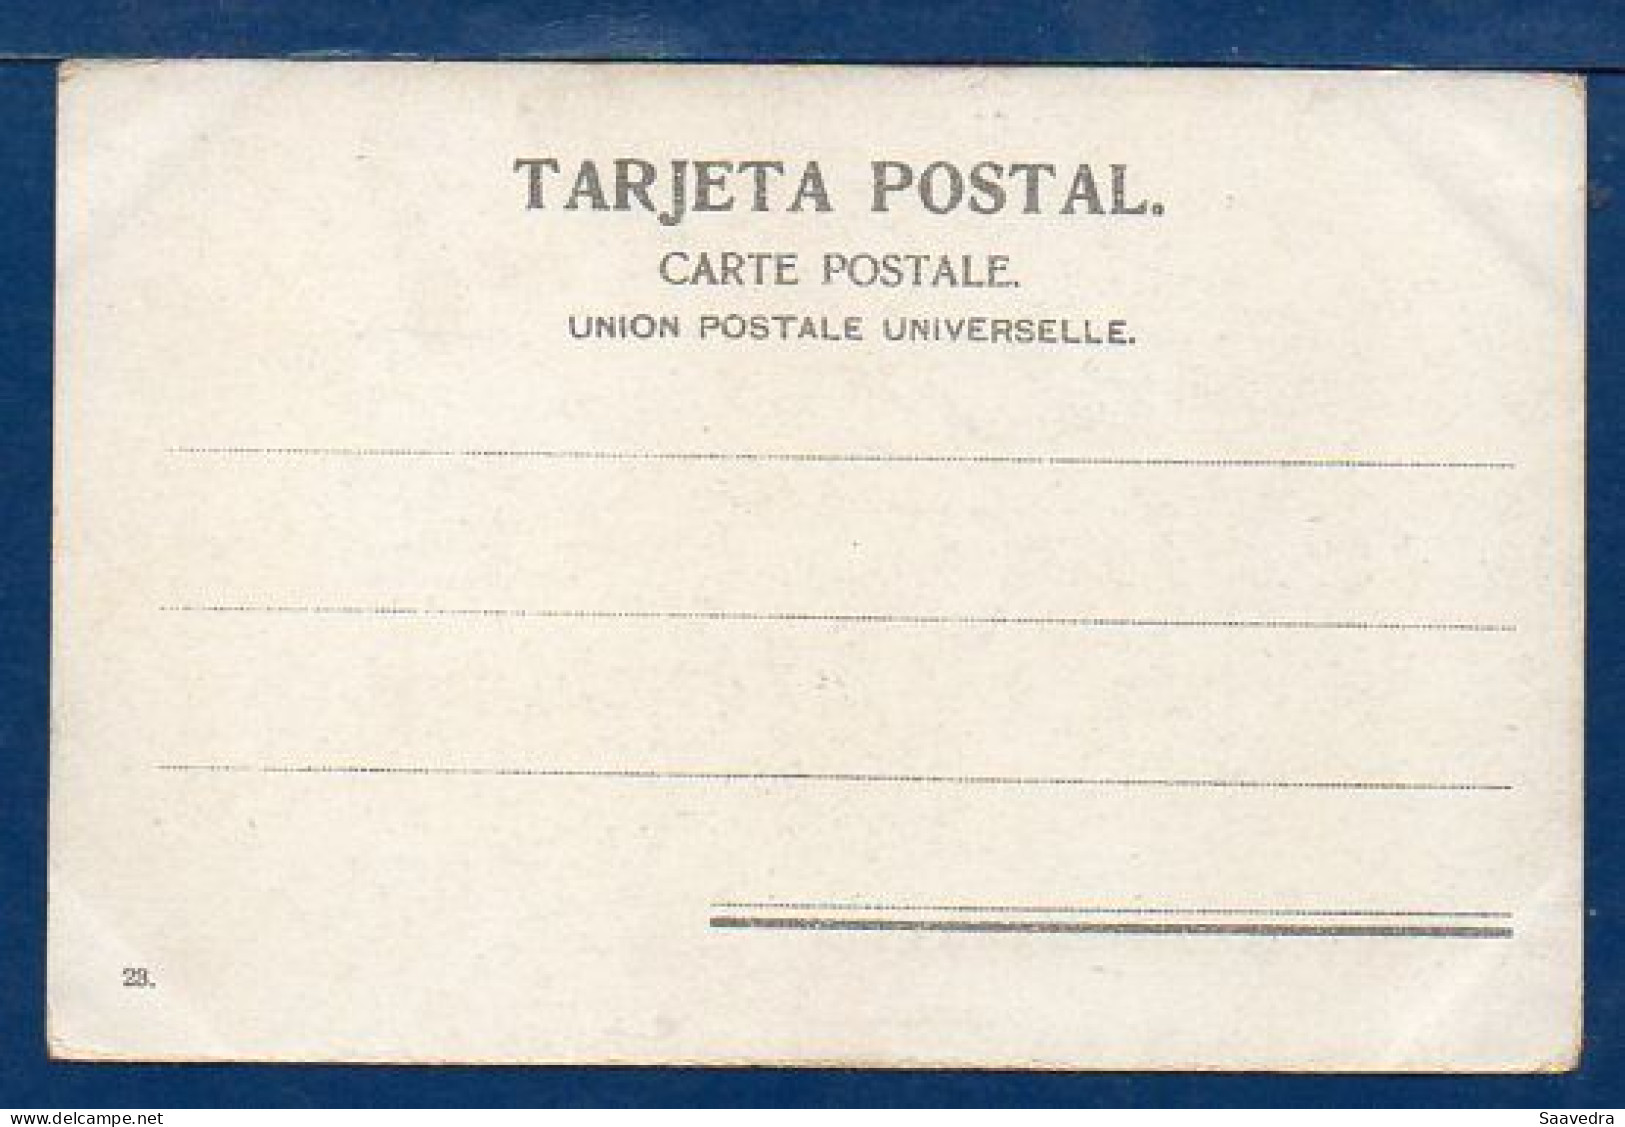 Argentina, Buenos Aires, 1900, Penitenciaria Nacional (Jail), Unused Postcard  (200) - Argentinien